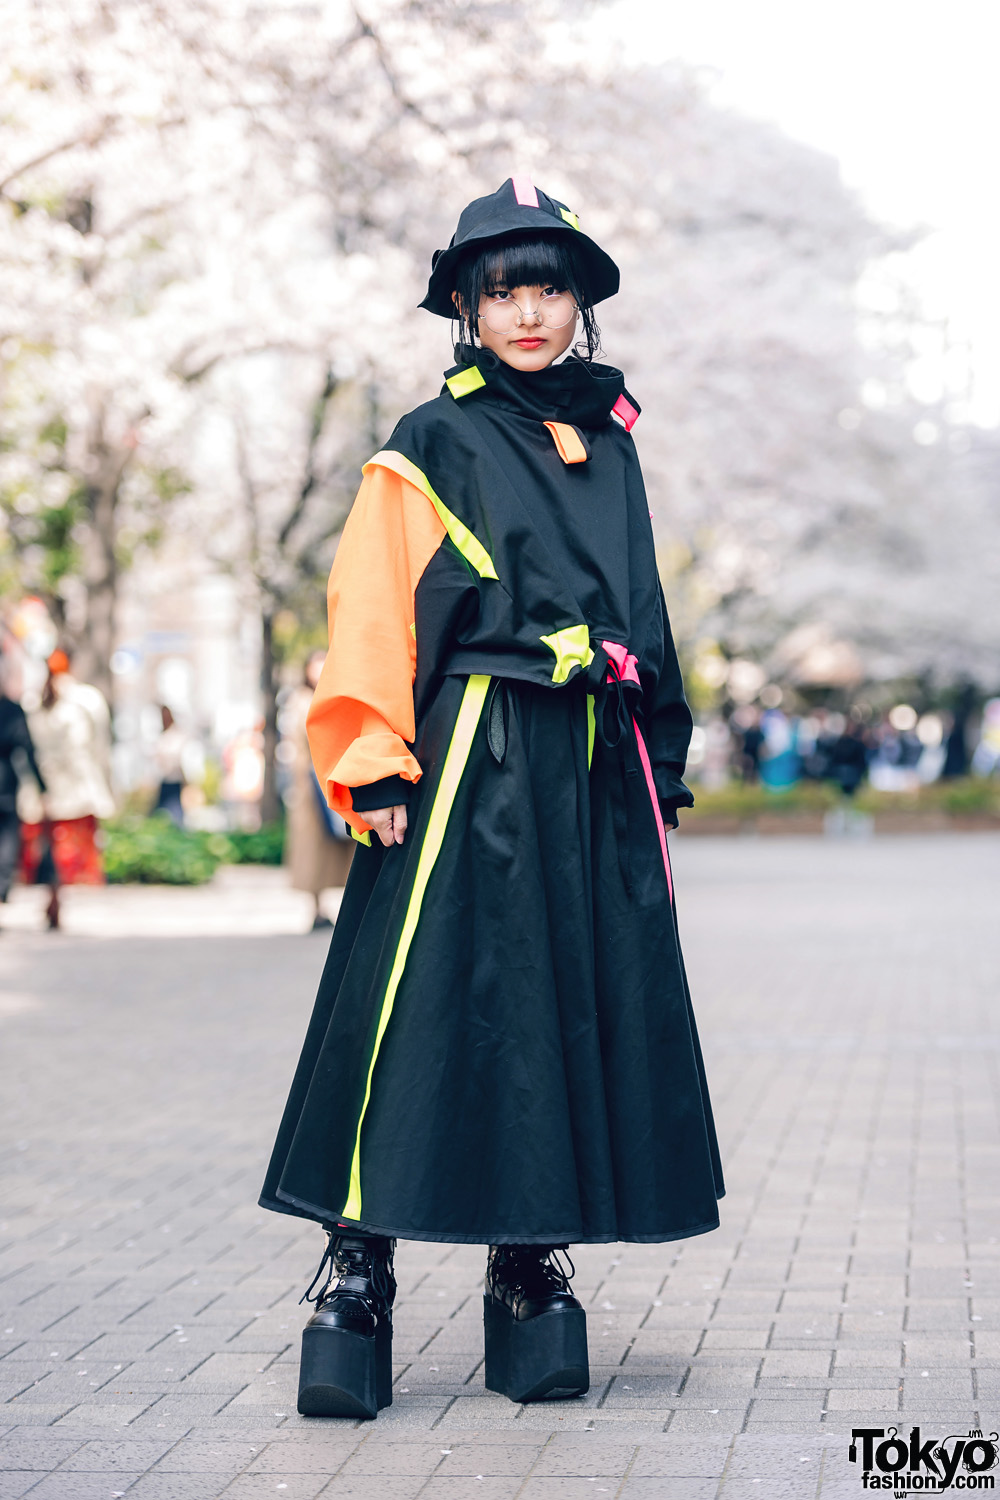 Black & Neon Eclectic Street Style at Bunka w/ Zetsumetsu Kigushu, Bucket Hat & Yosuke Platform Boots